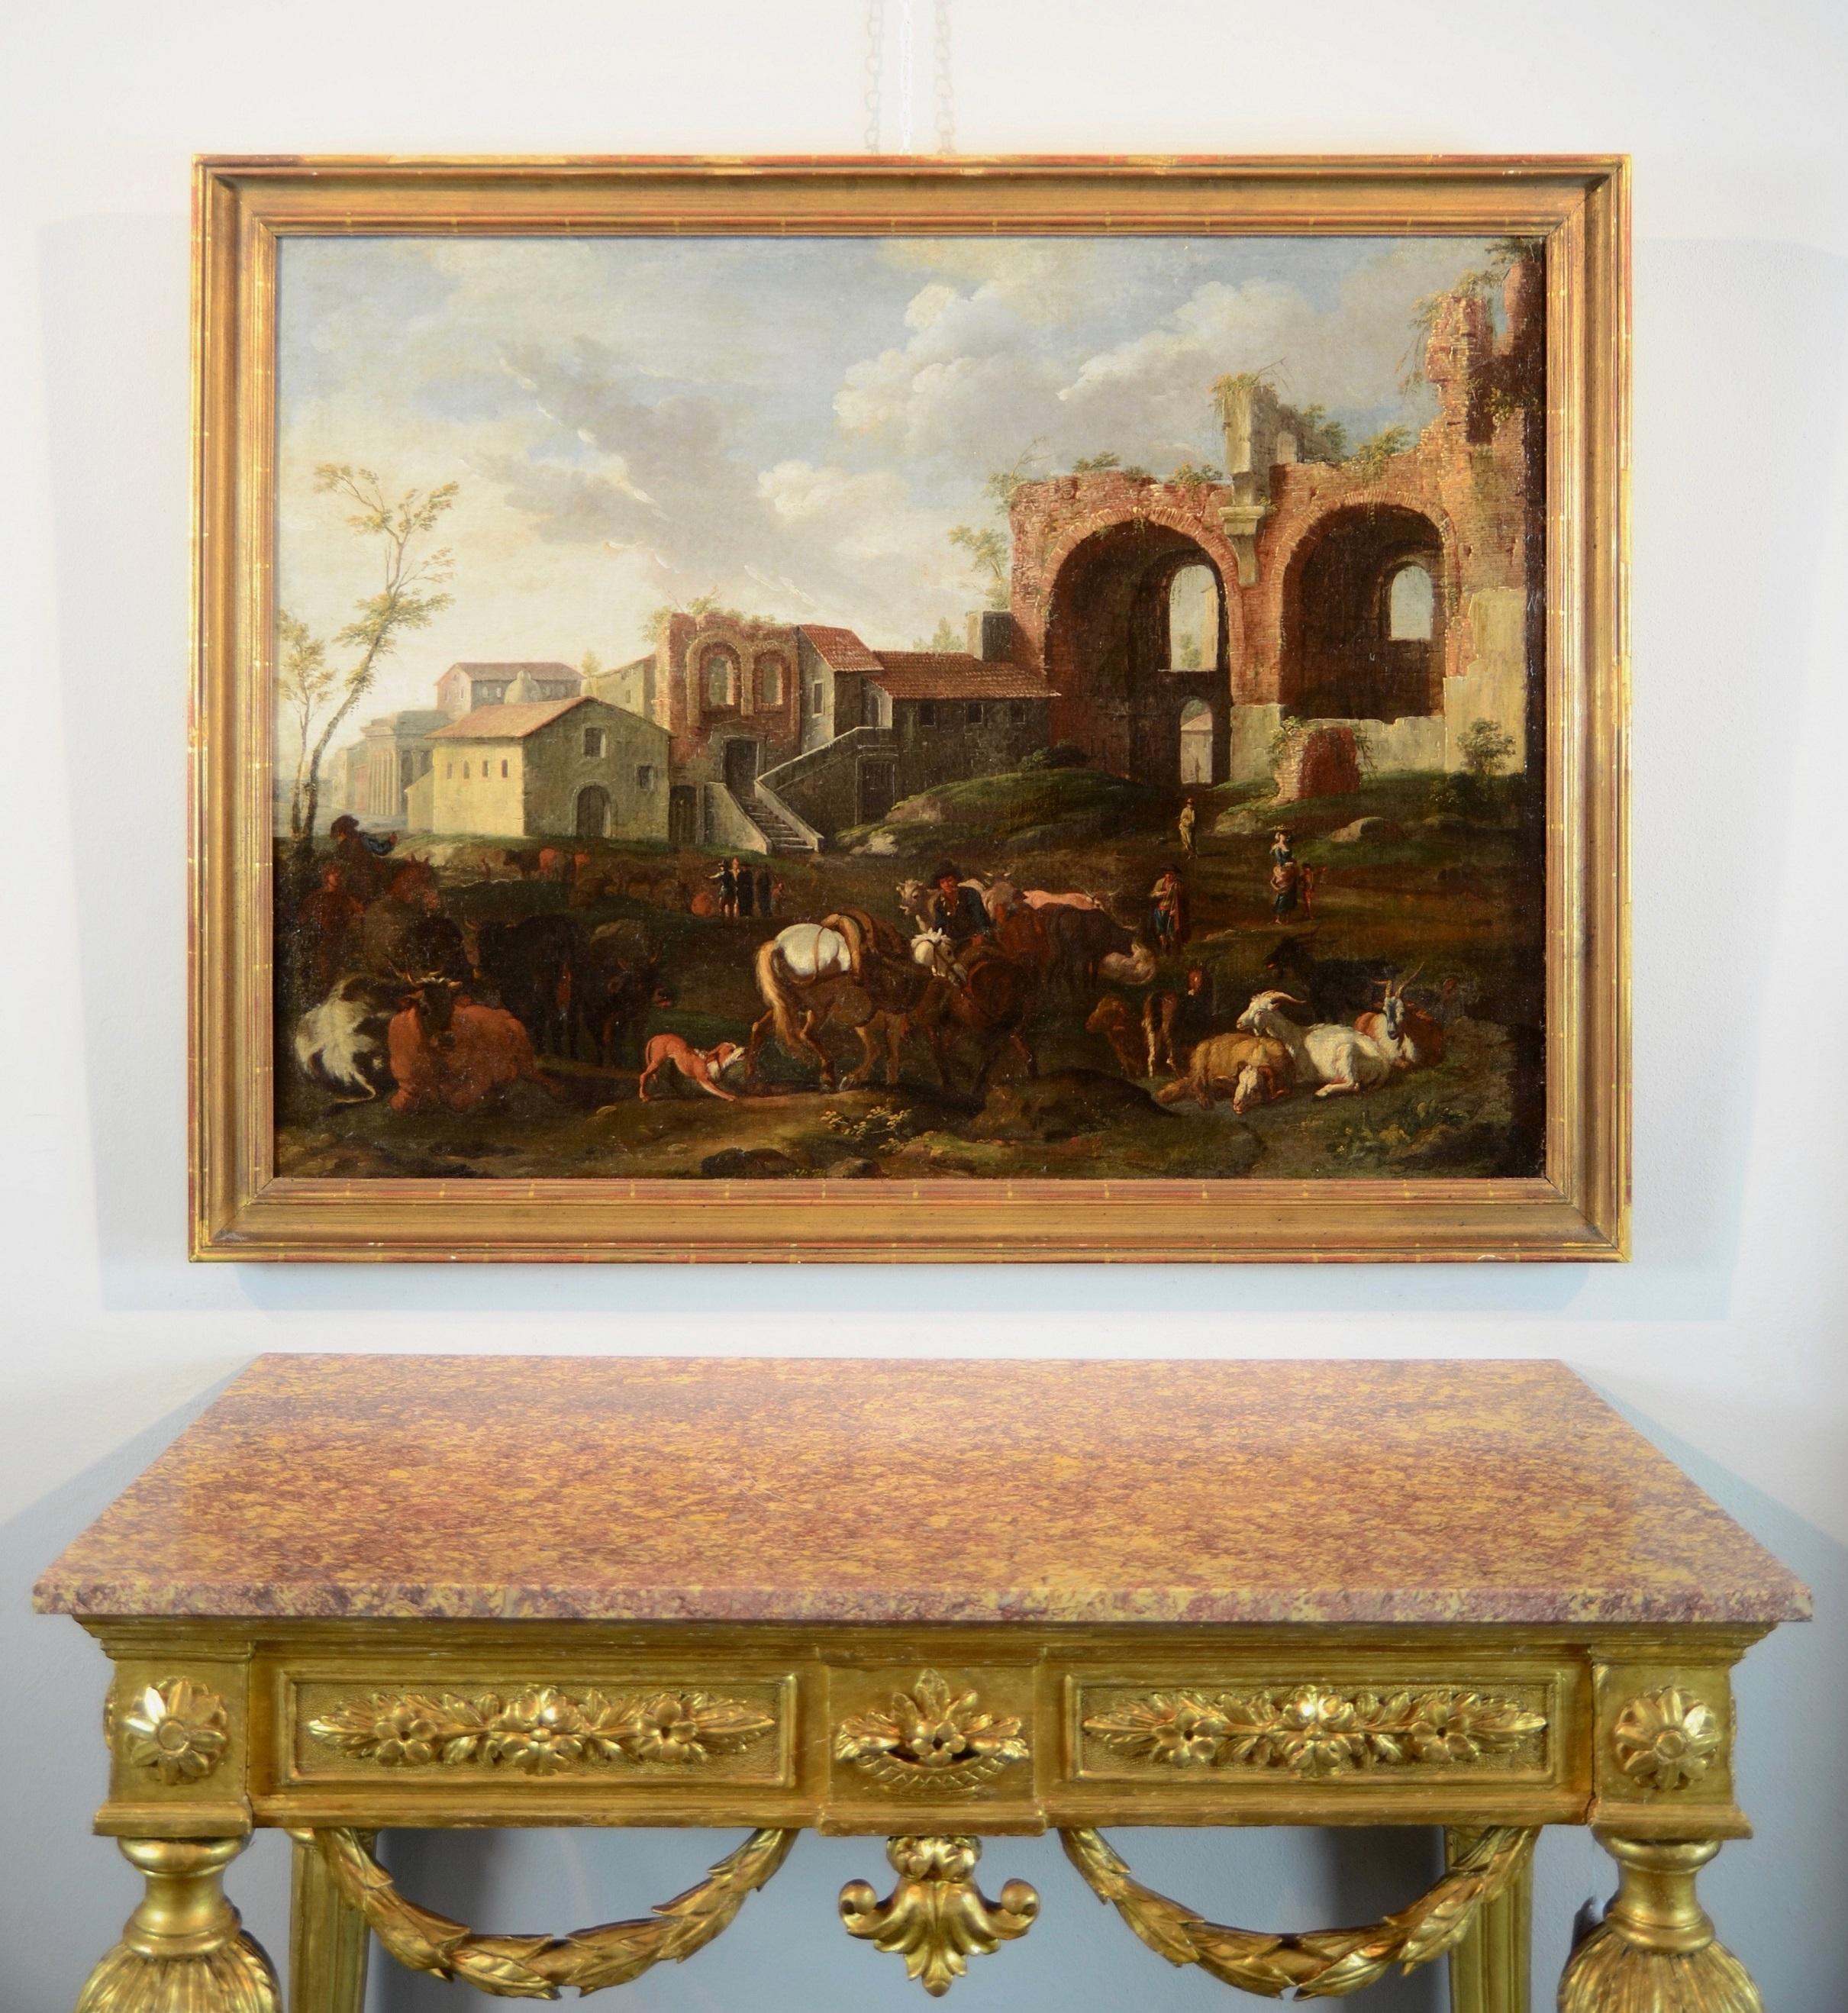 Peinture à l'huile sur toile - Paysage de Rome de Van Bloemen - 17/18e siècle - Grand maître italien - Maîtres anciens Painting par Pieter Van Bloemen (1674-1720)